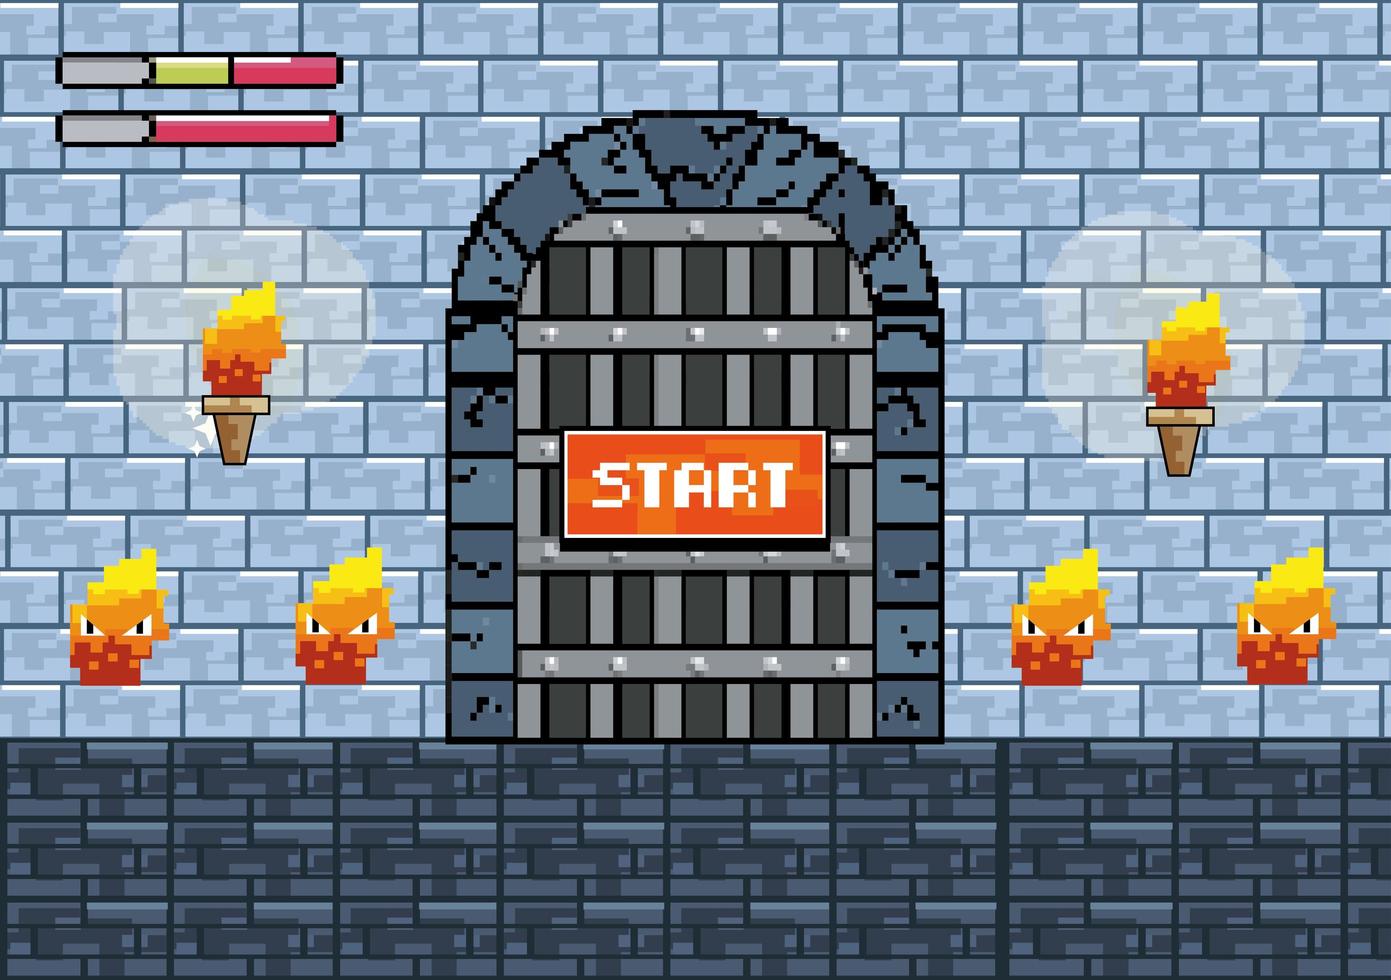 Comienza la escena del videojuego con personajes de puerta y fuego. vector